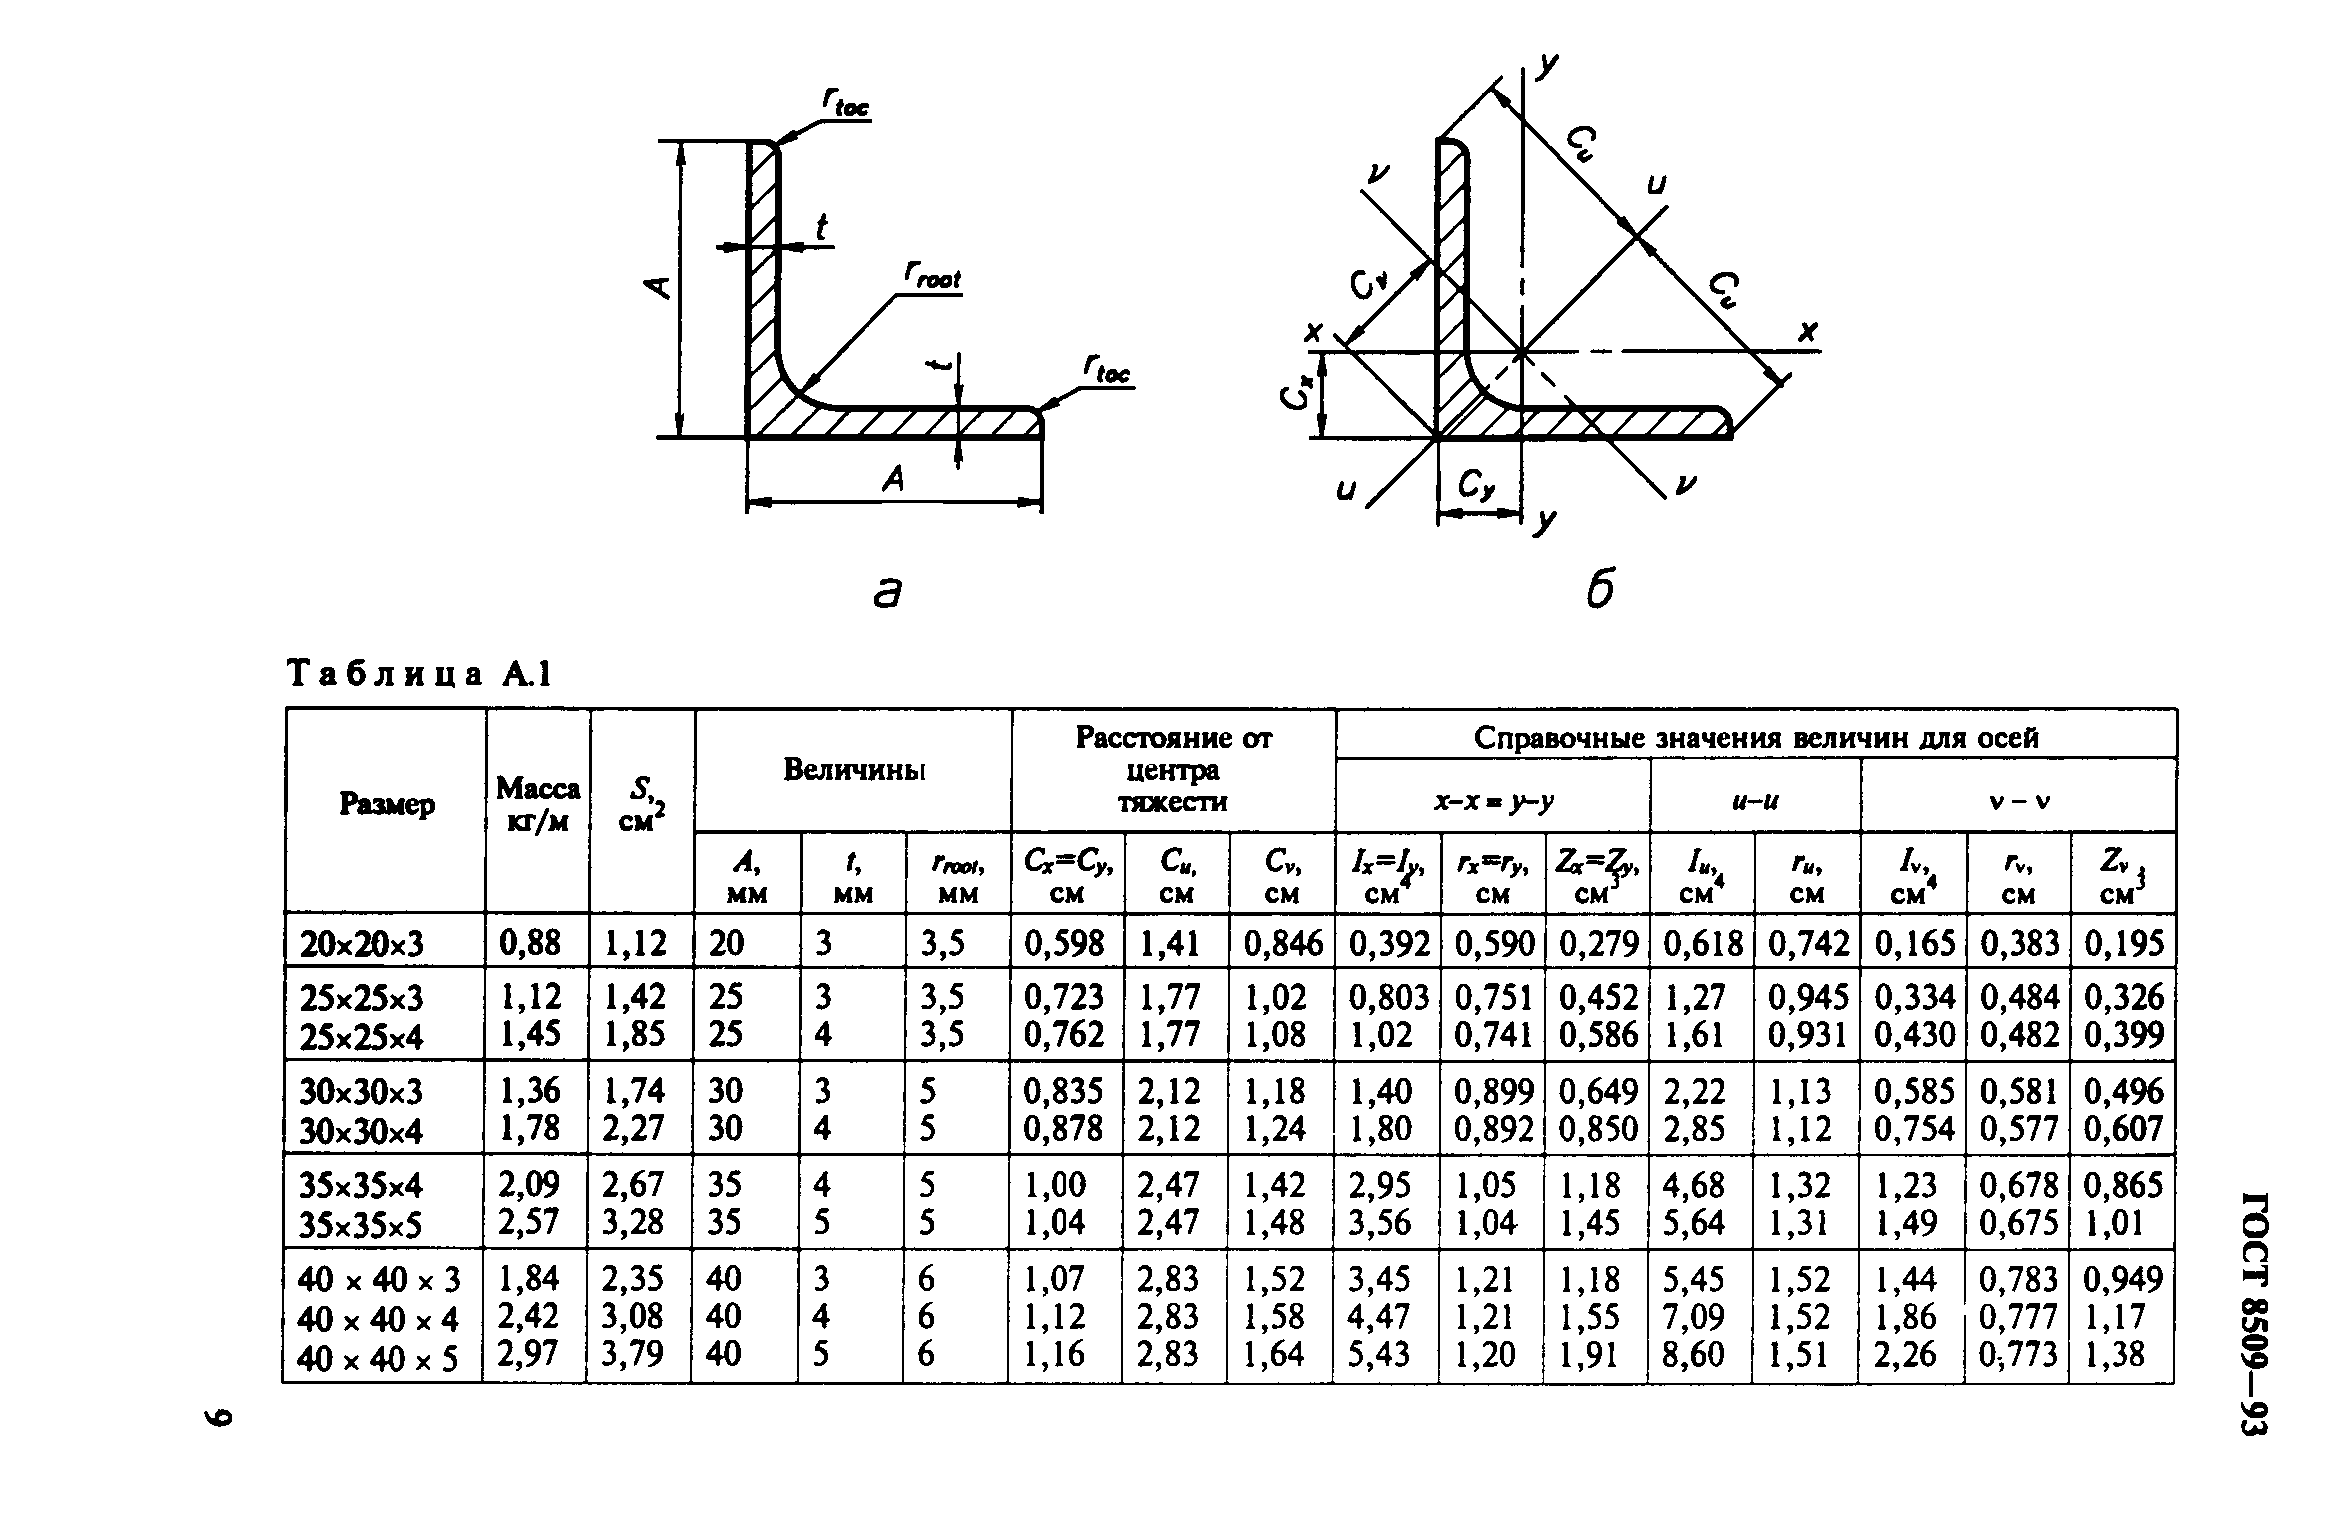 Гост 8509-93. уголки стальные горячекатаные равнополочные. сортамент